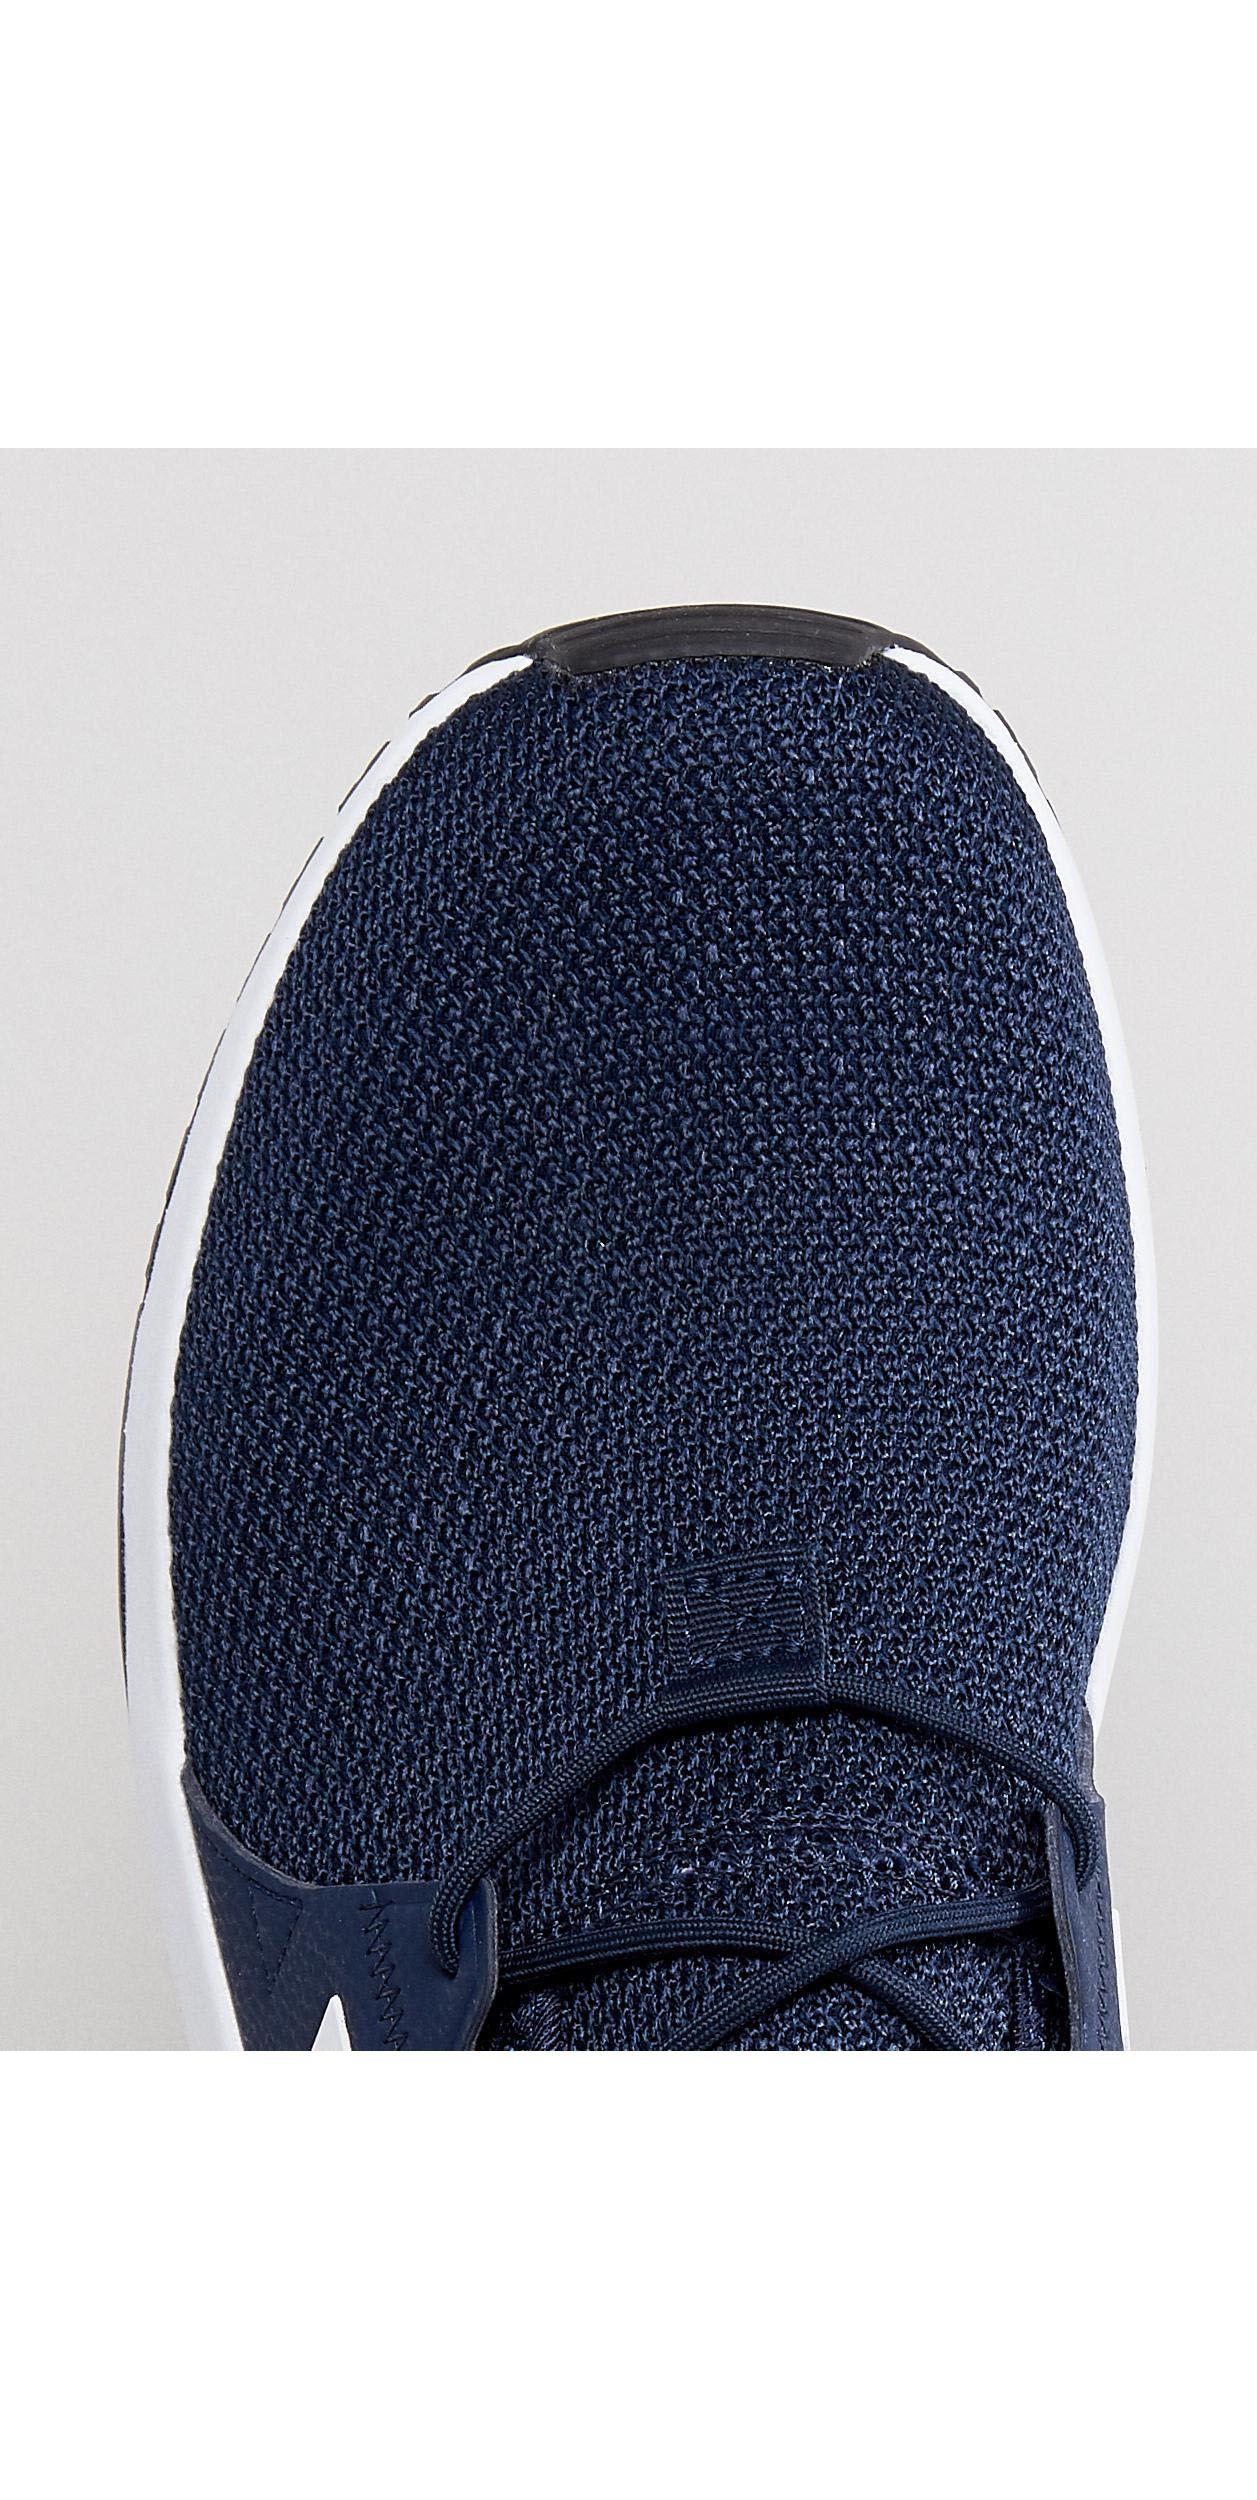 adidas Originals X Plr Trainers in Blue for Men | Lyst